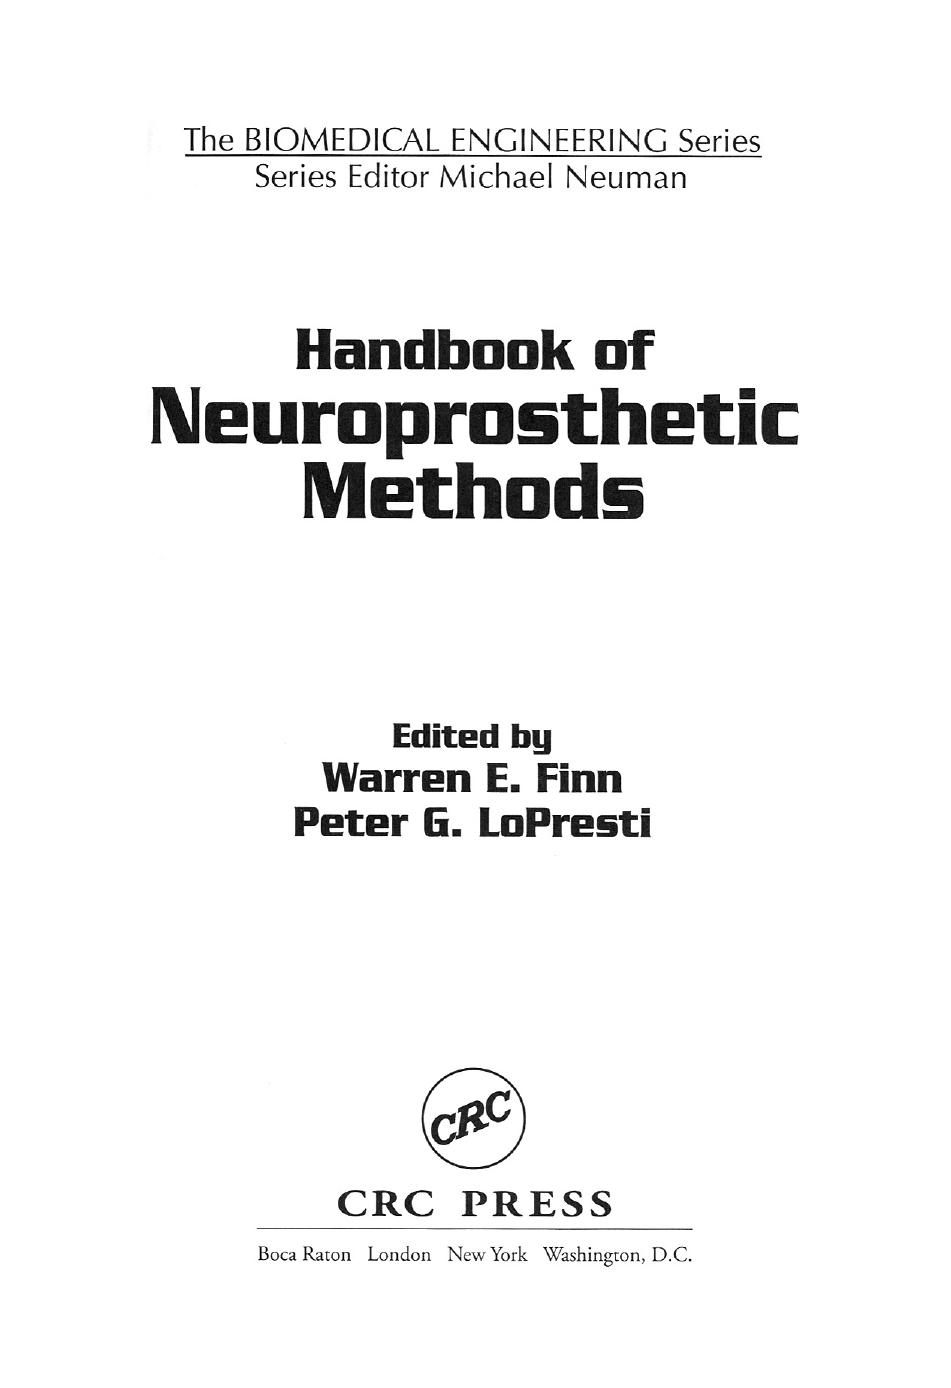 [Warren E. Finn, Peter G. LoPresti] Handbook of ne(b-ok.org)